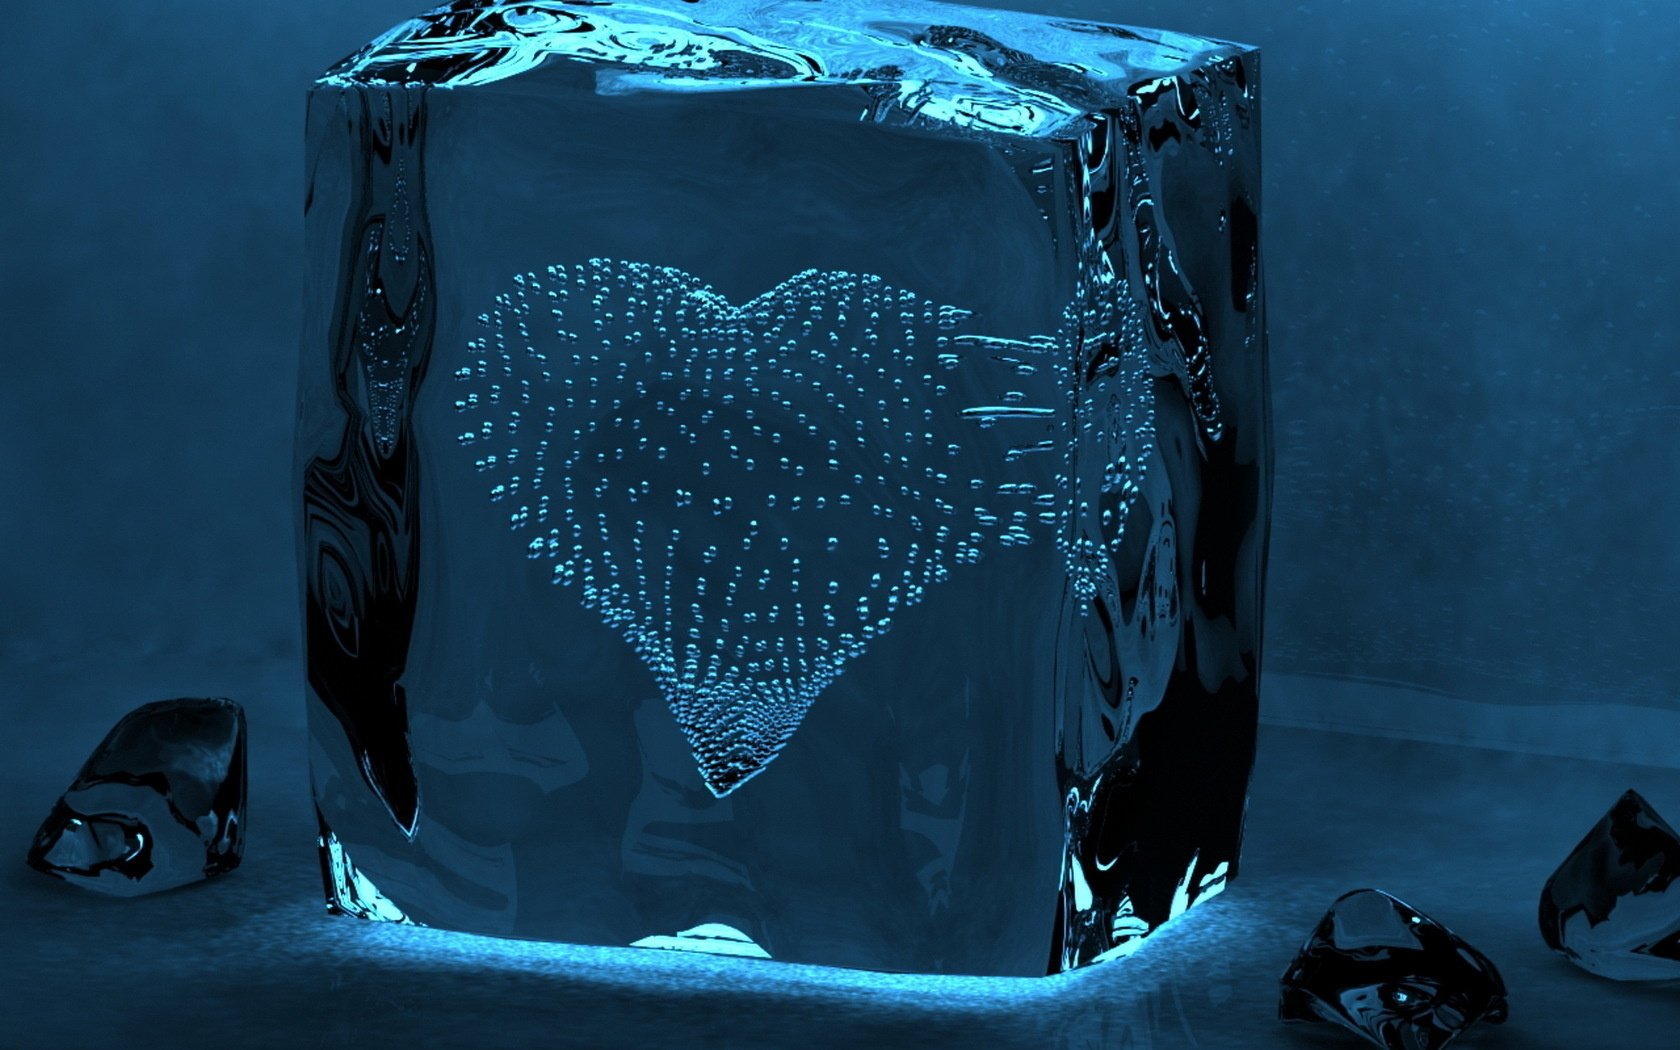 Сердце из пузырьков внутри ледяного куба